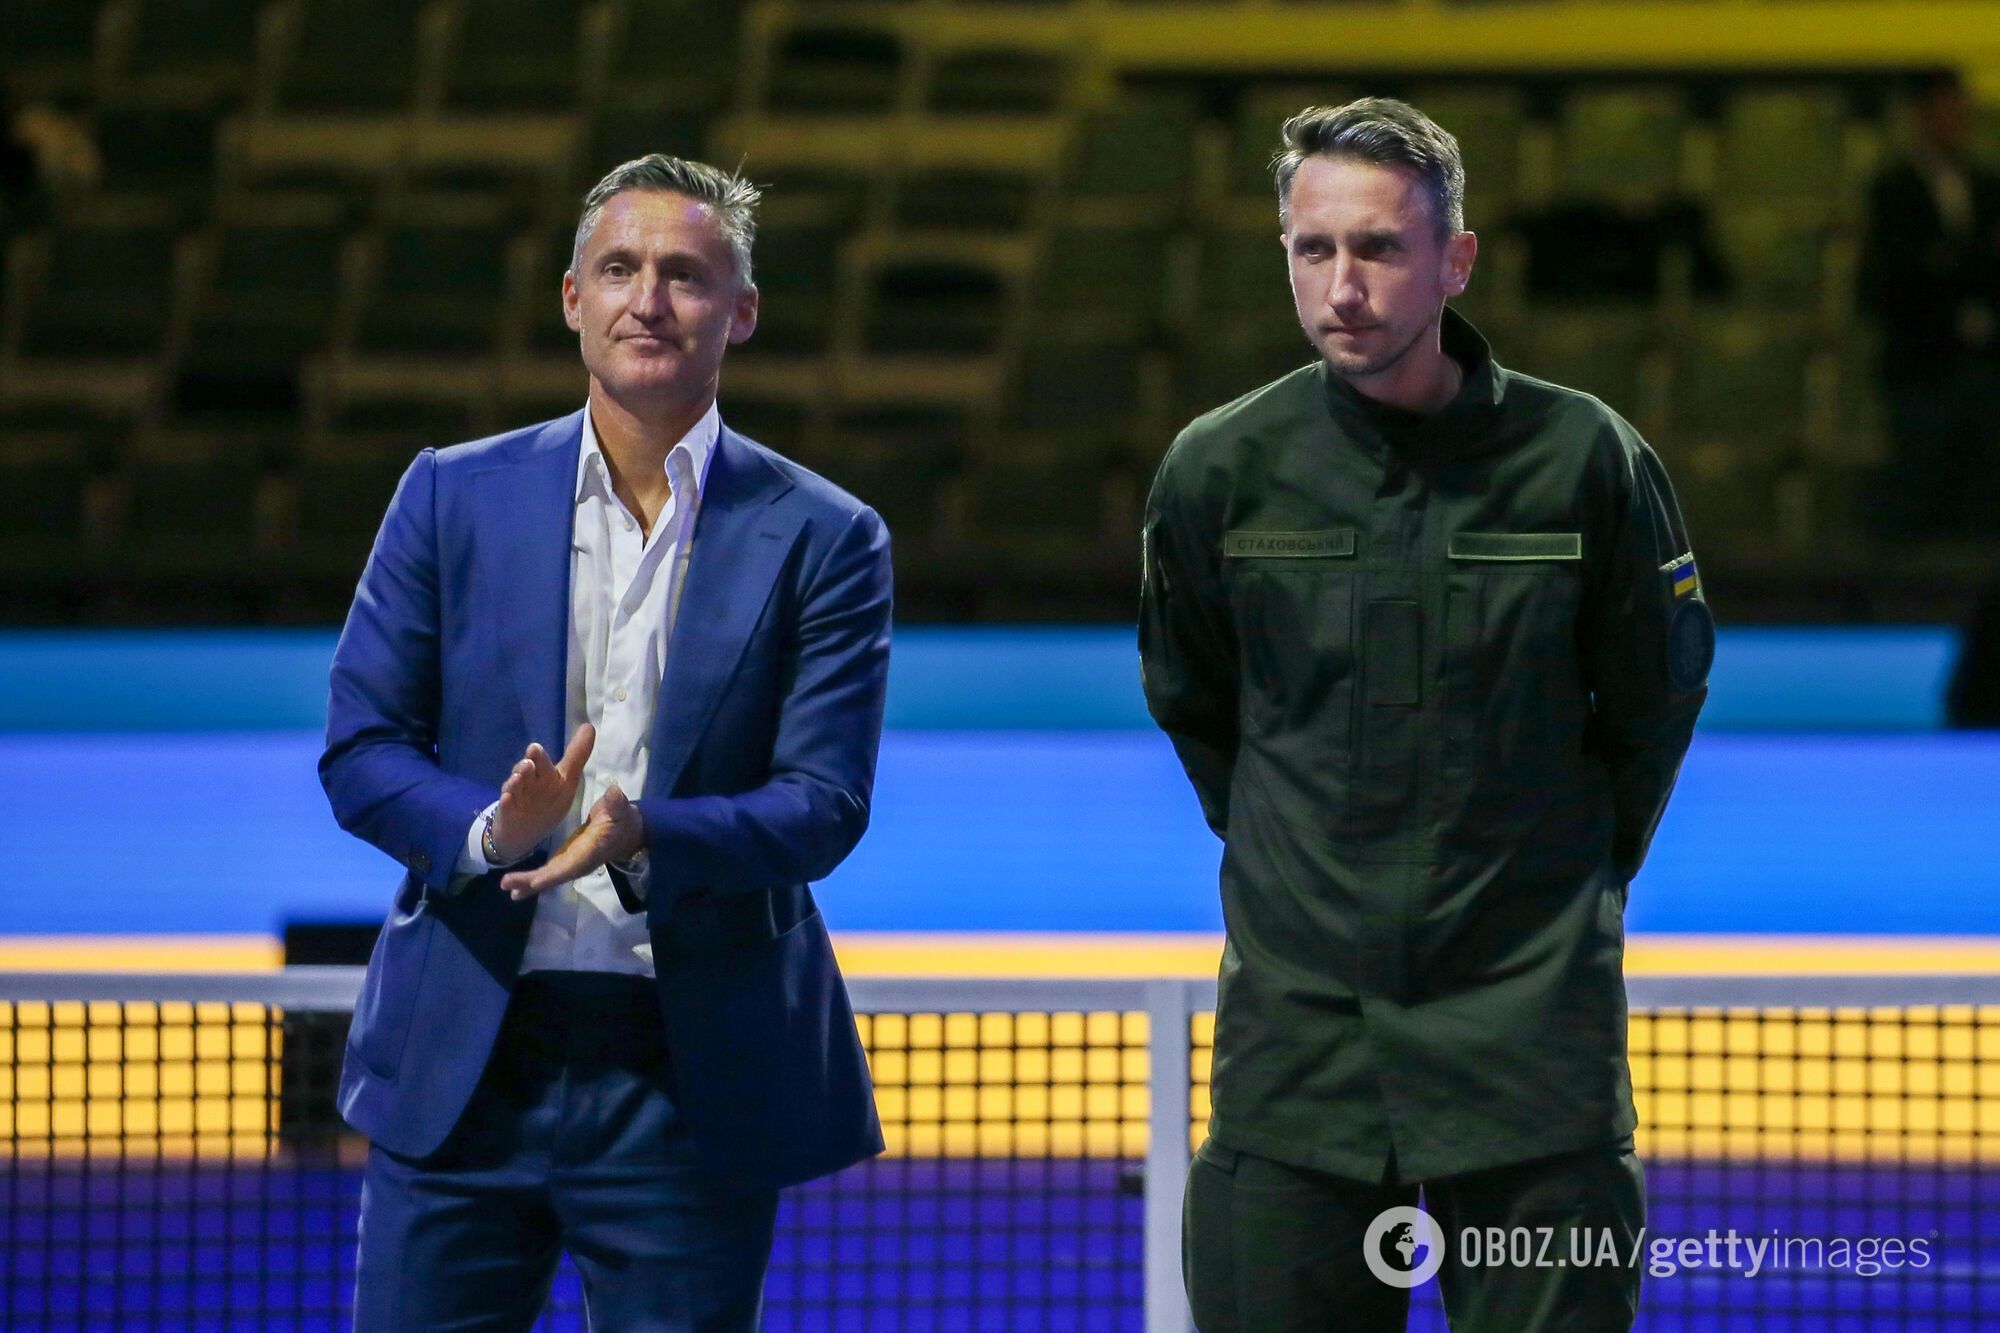 "Не верим в коллективную вину": глава мирового тенниса оправдал россиян, которые "не сделали ничего плохого"